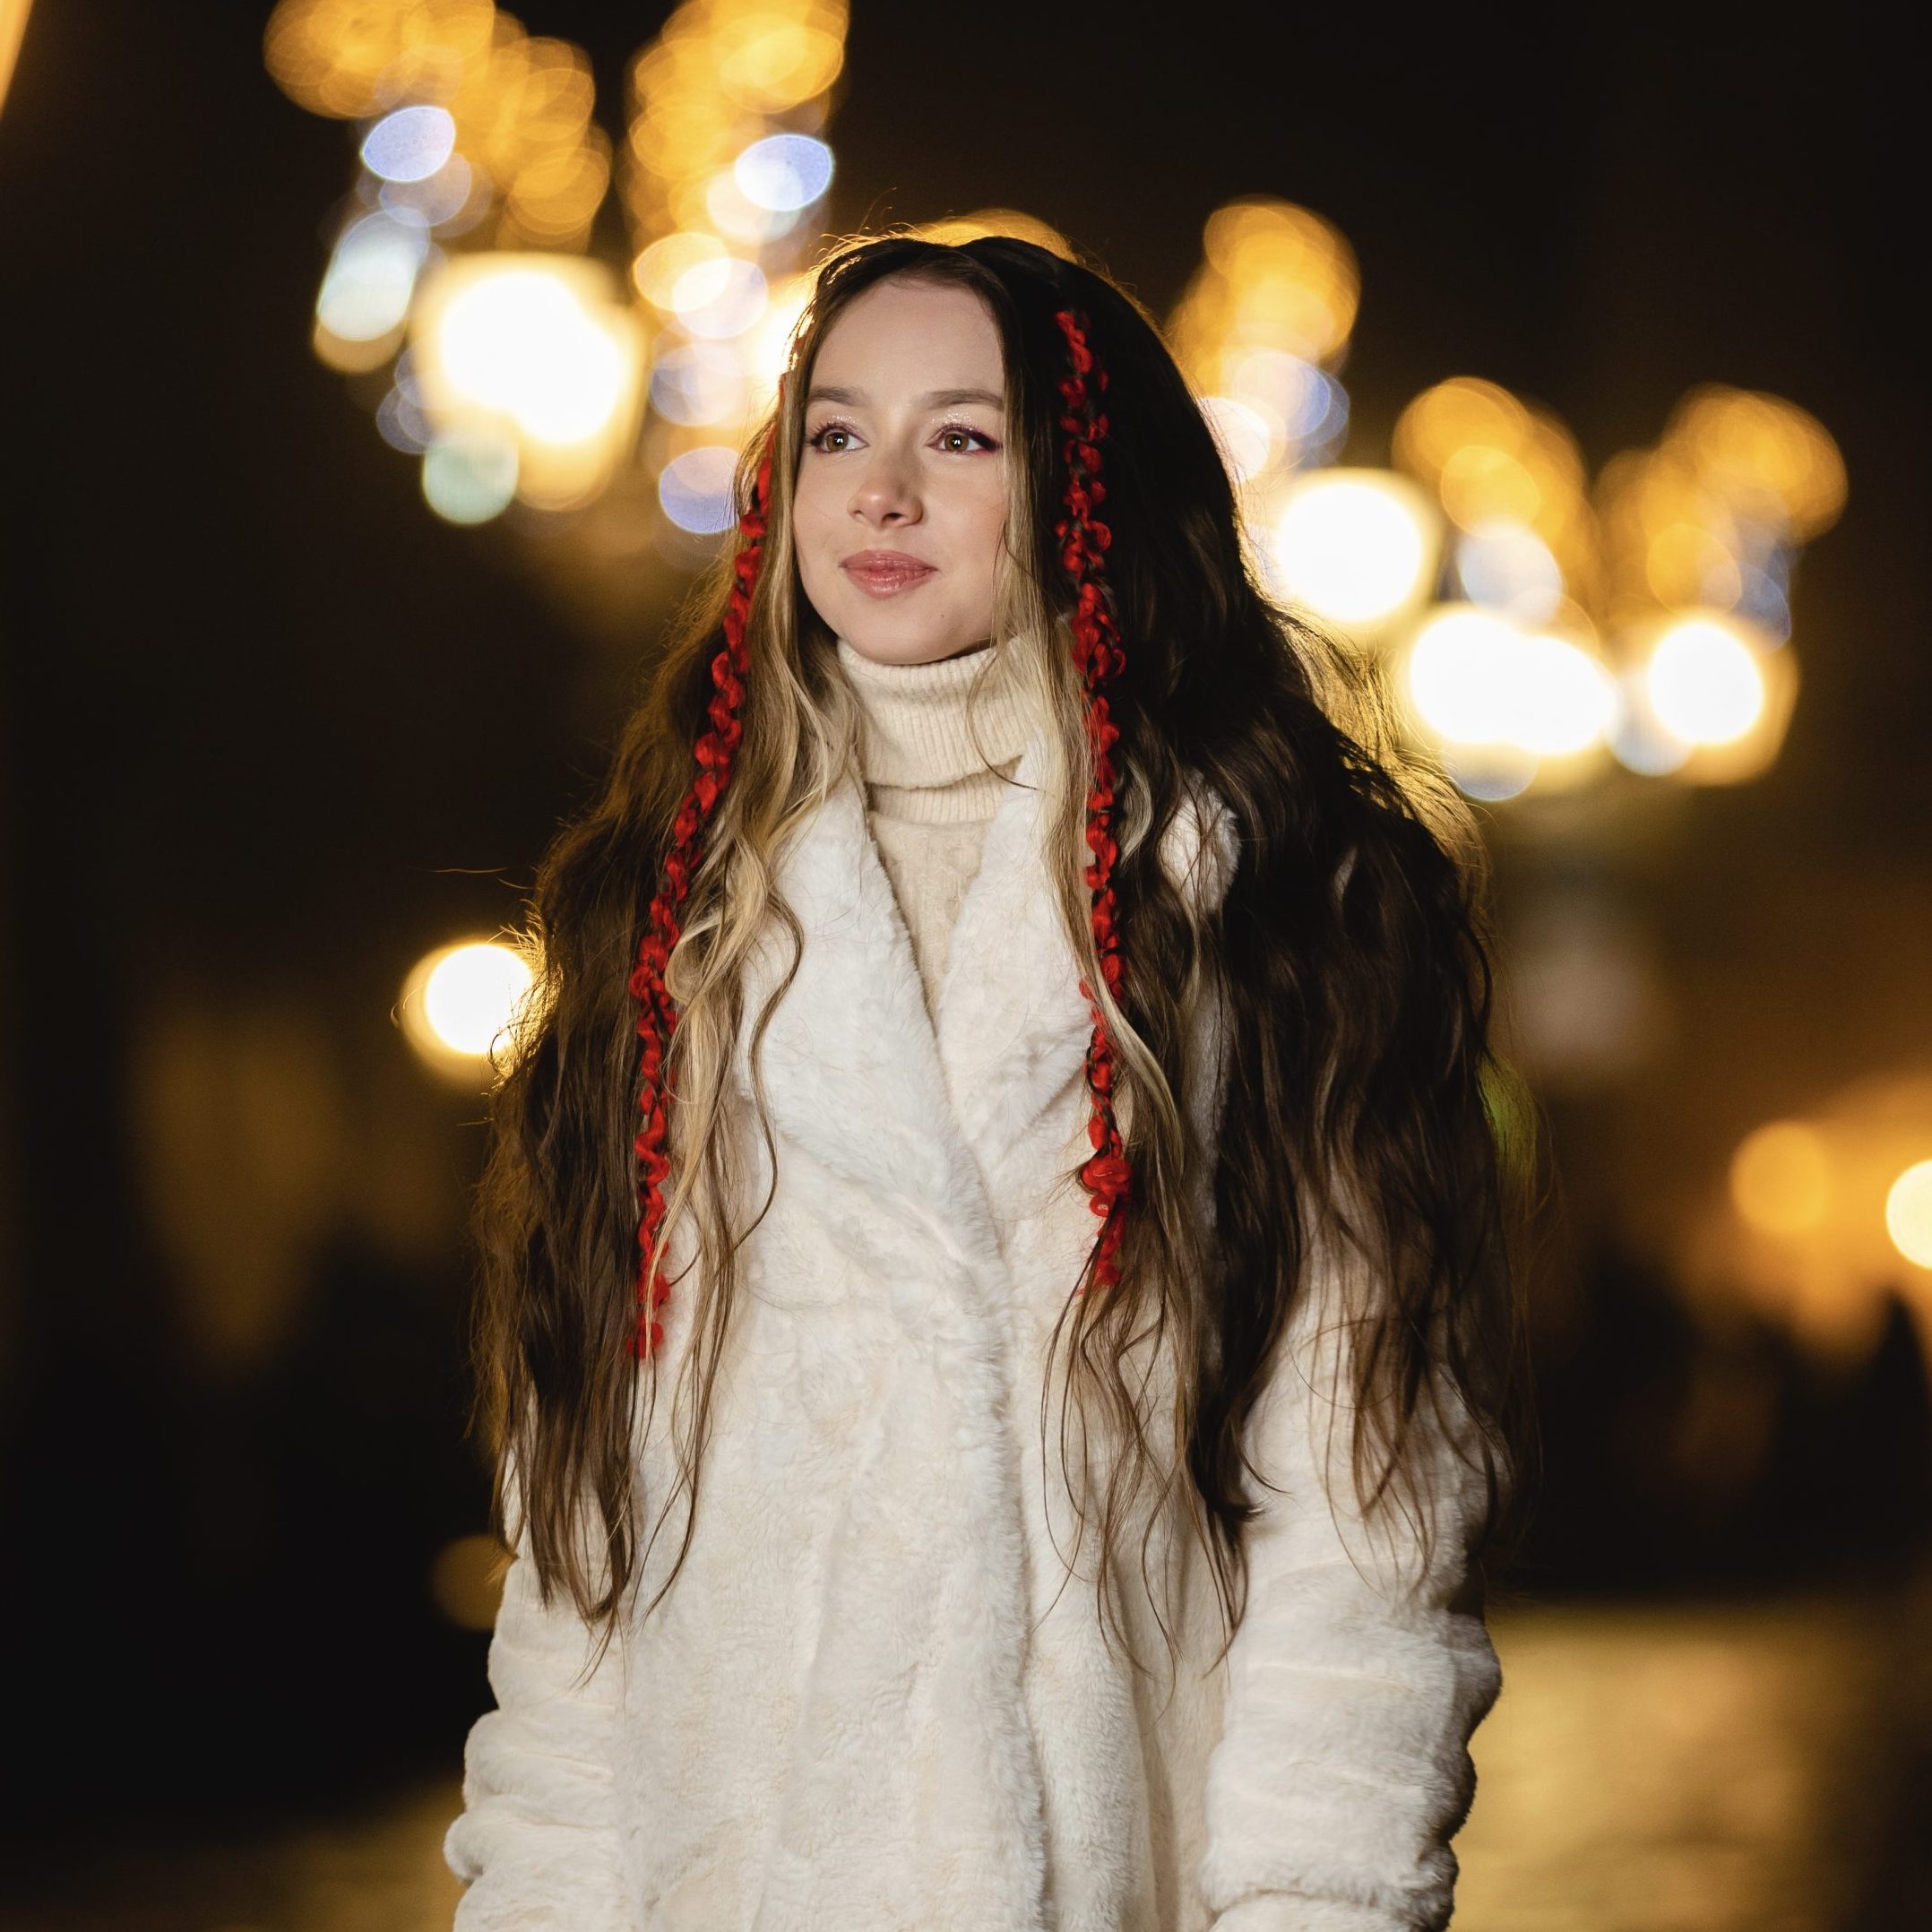 Співачка  VLADA K презентує особливу автентичну колядку “Нічка та радісна” до новорічно-різдвяних свят